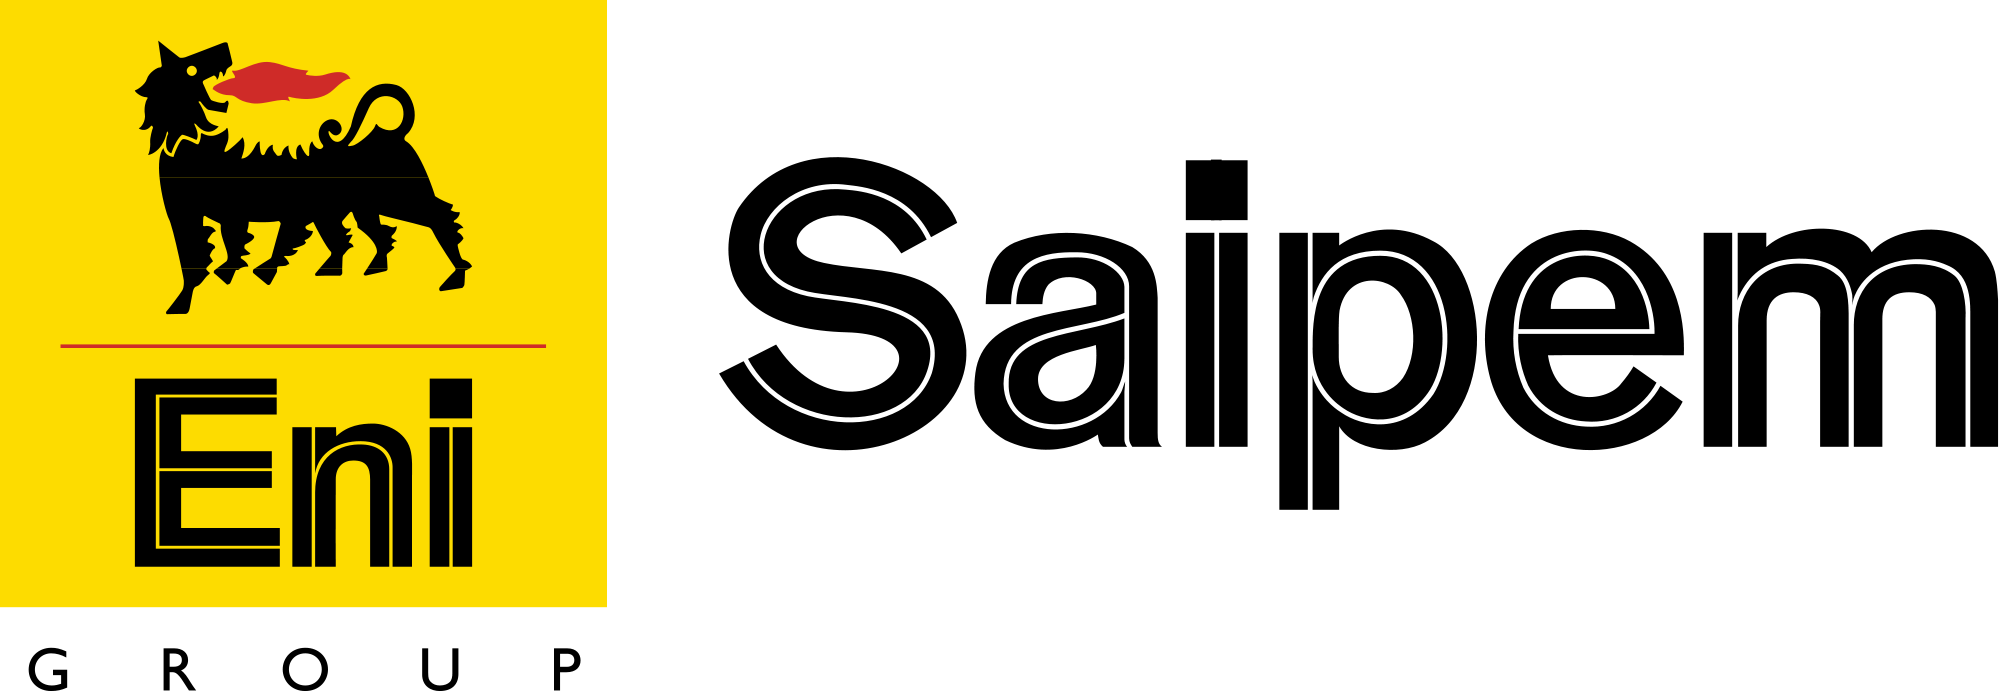 2000px-Saipem_logo.svg